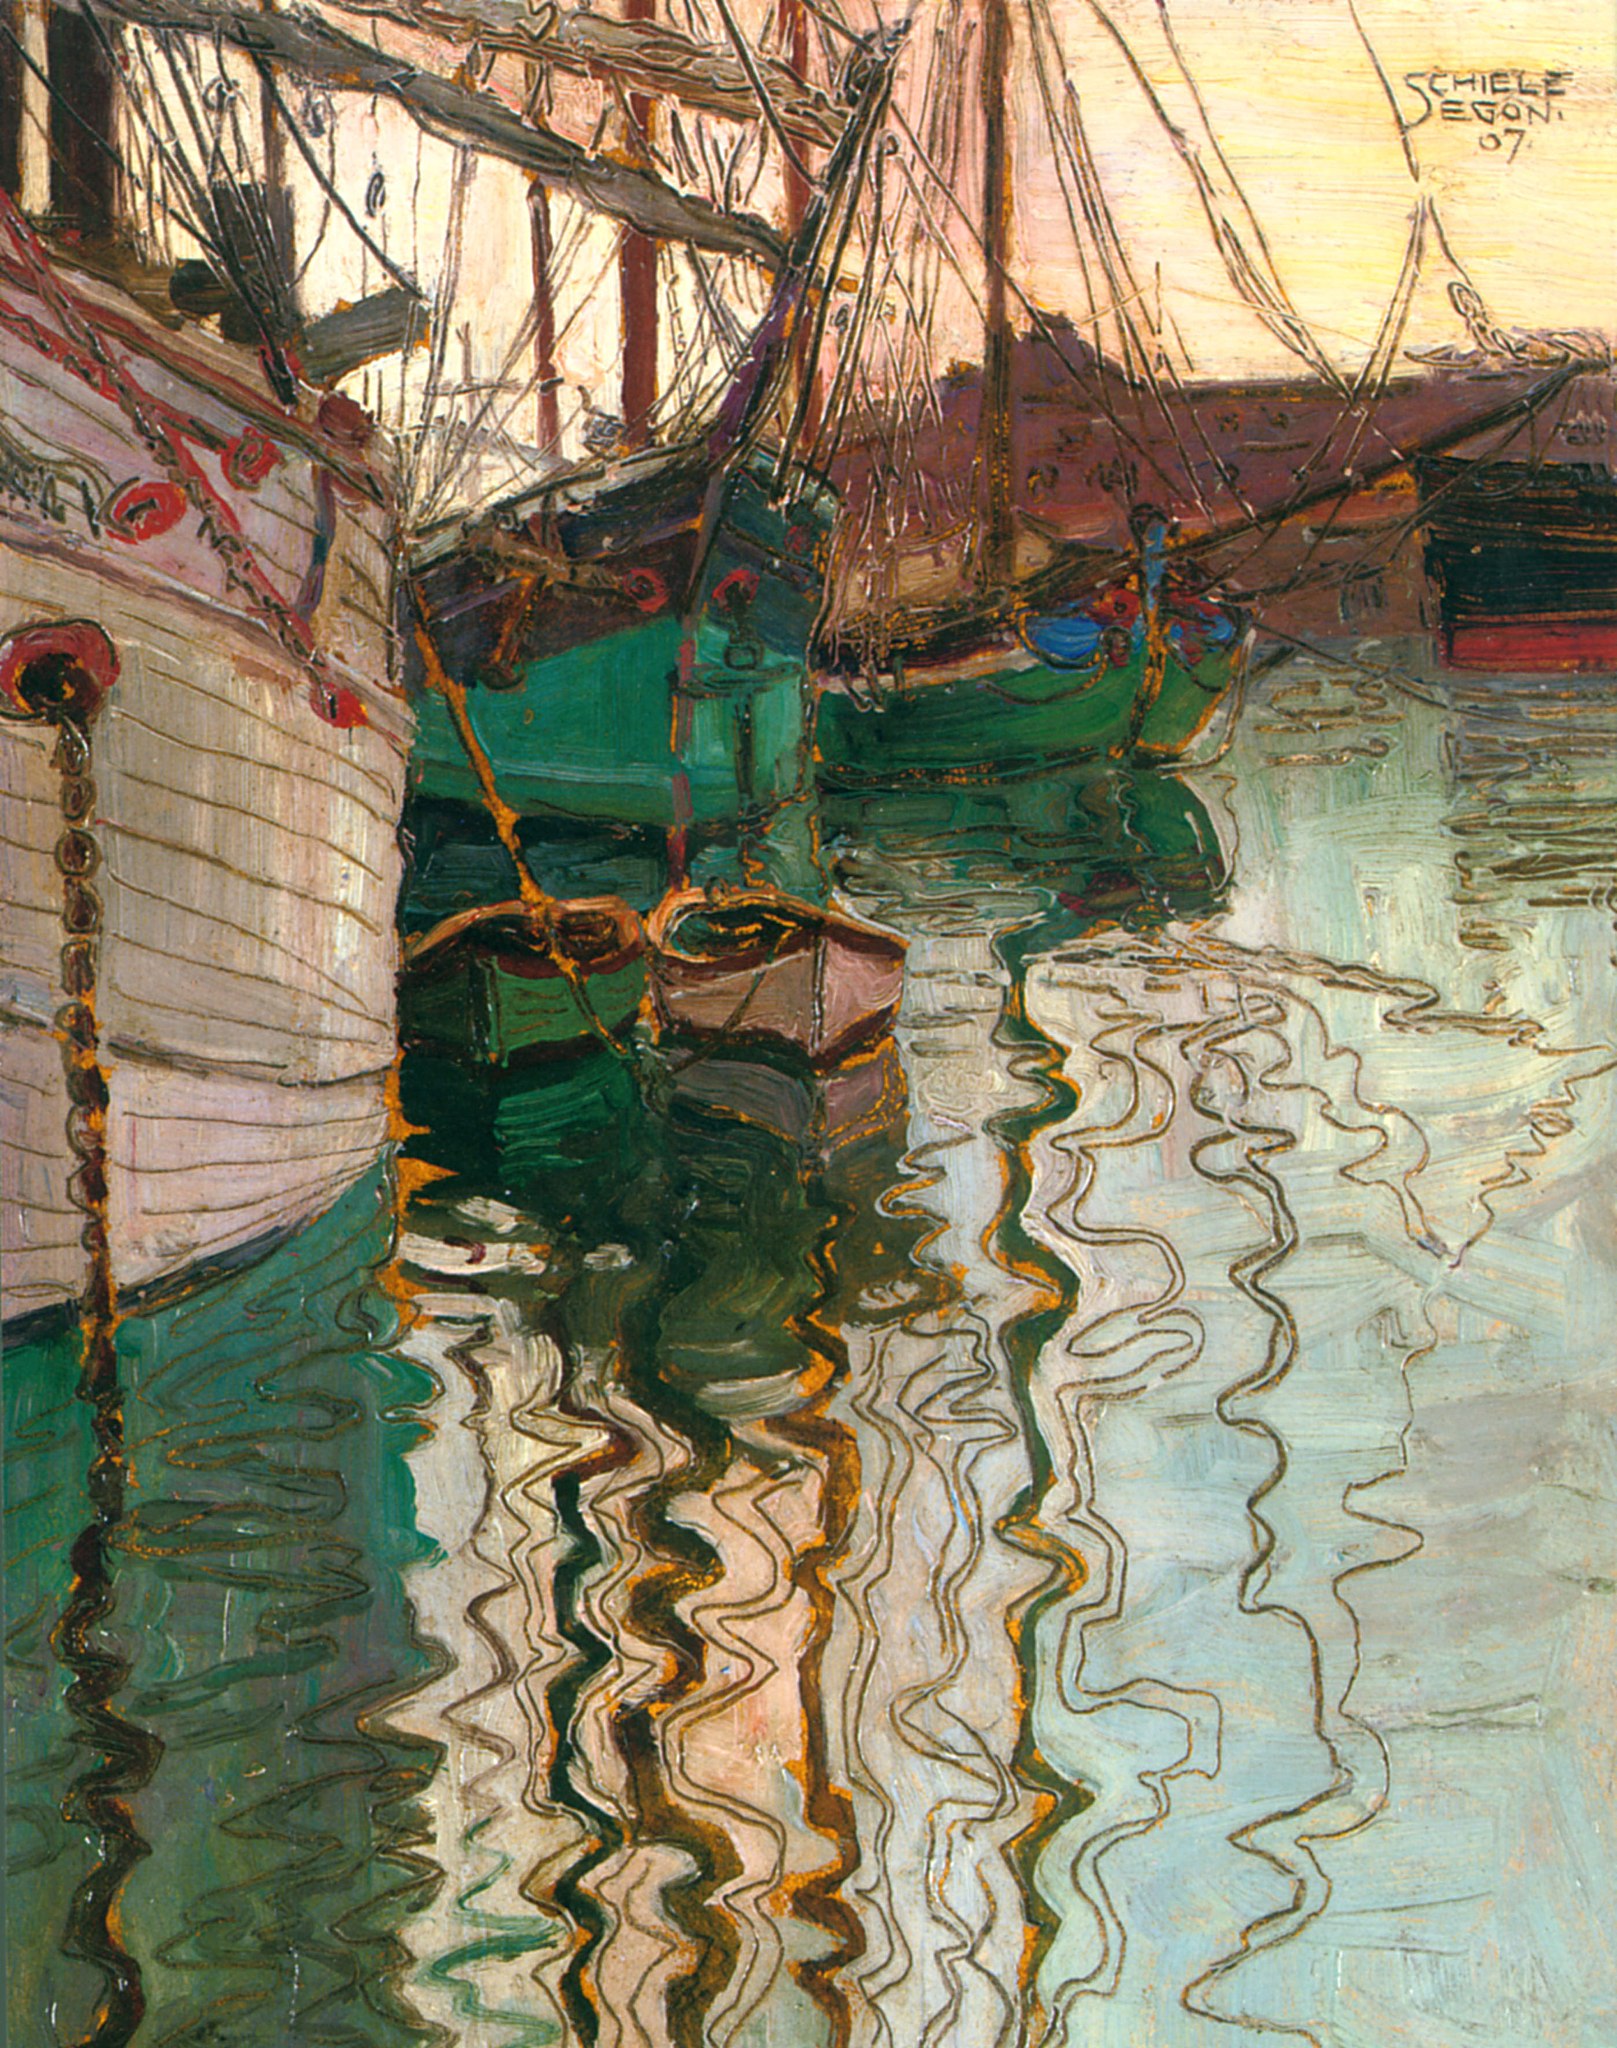 Il porto di Trieste by Egon Schiele - 1907 - 24,6 x 18 cm collezione privata